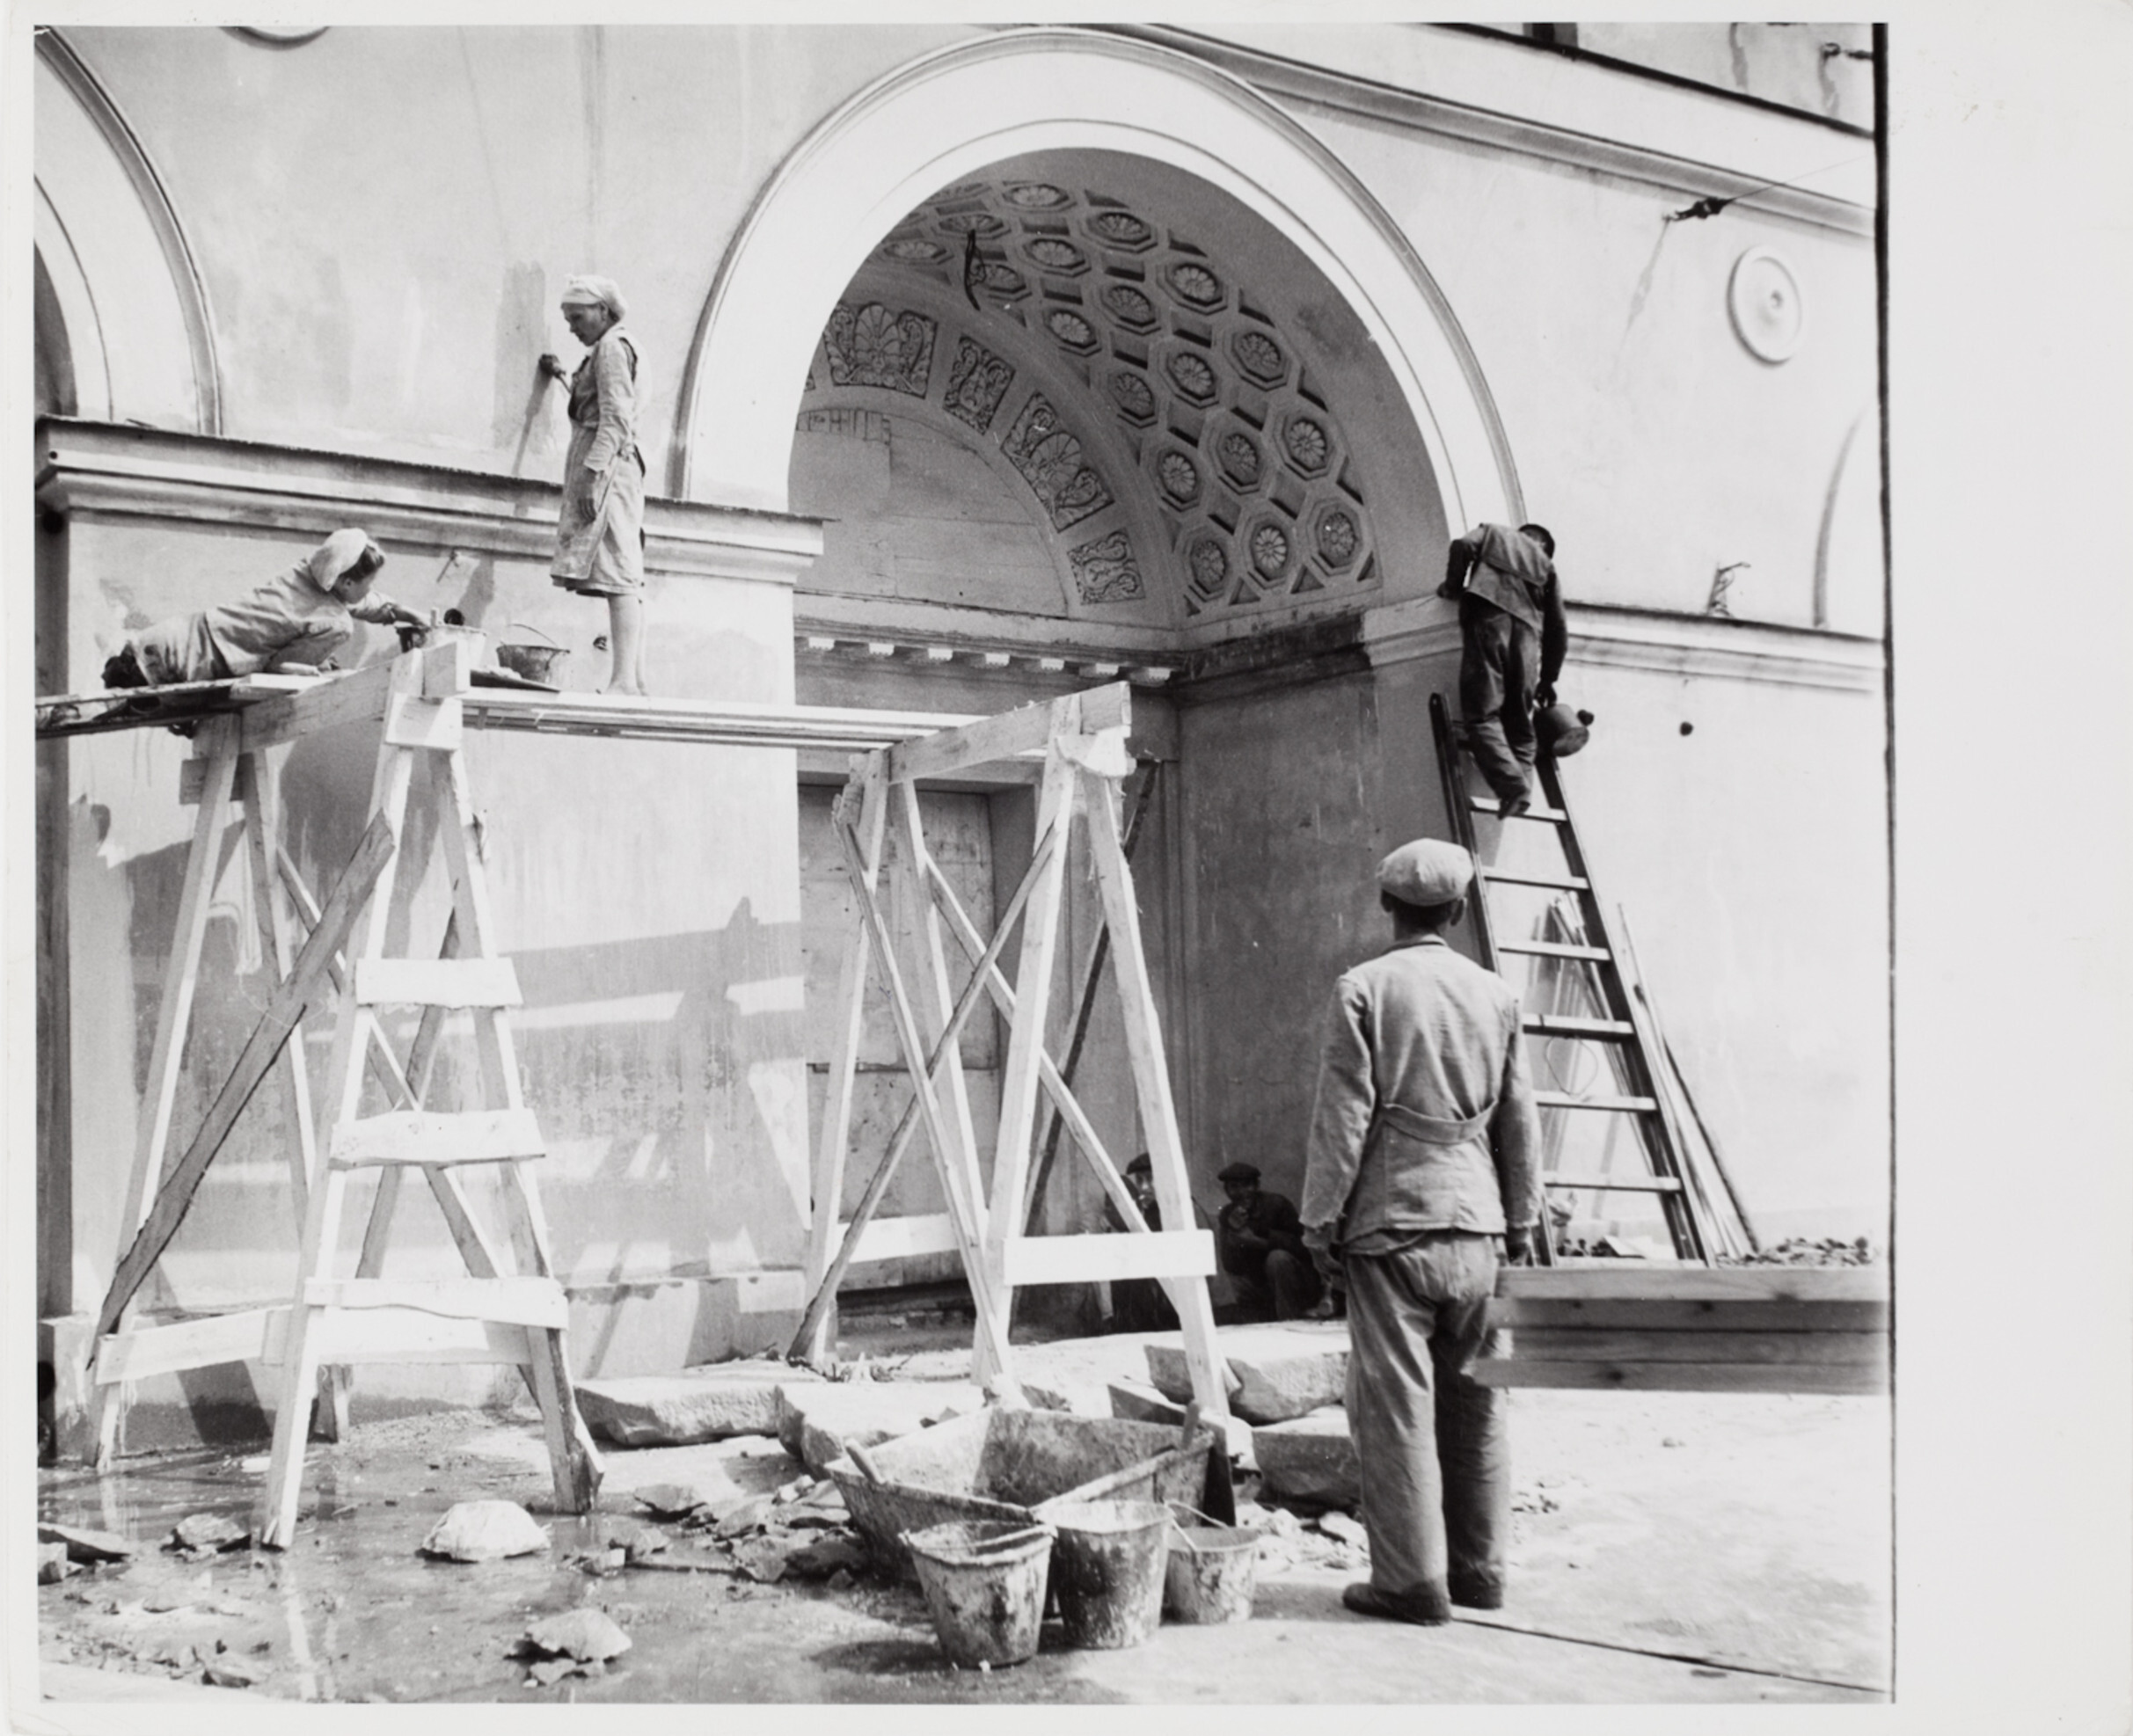 Бригады, работающие над восстановлением поврежденных зданий в рамках подготовки к празднованию юбилея Москвы, Москва, 1947 год. Фотограф Роберт Капа